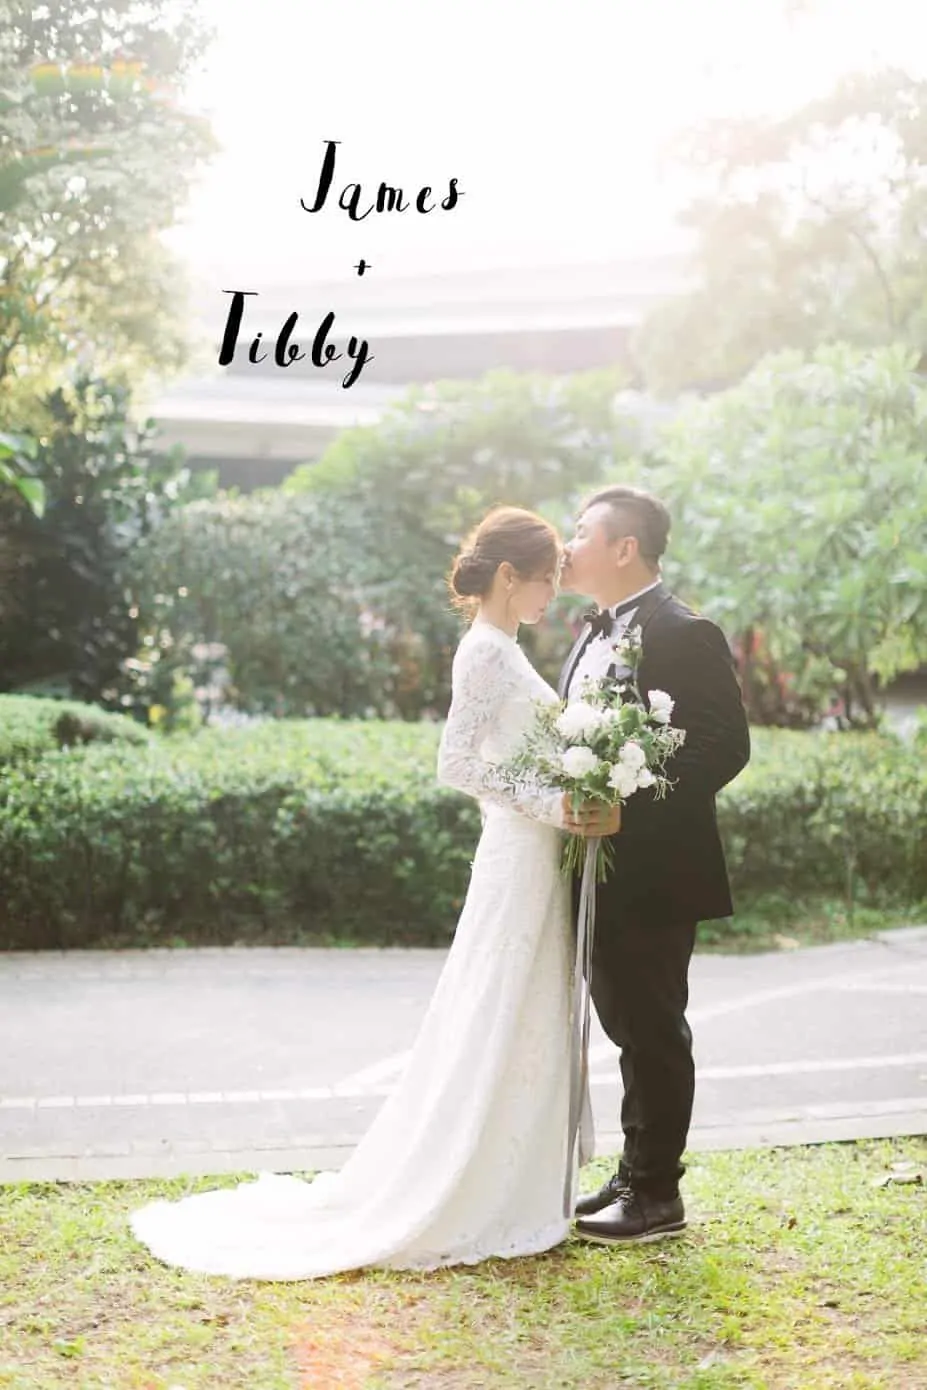 台北集食行樂婚紗攝影 | M+F WEDDING | 集實行樂美式戶外婚禮派對紀錄